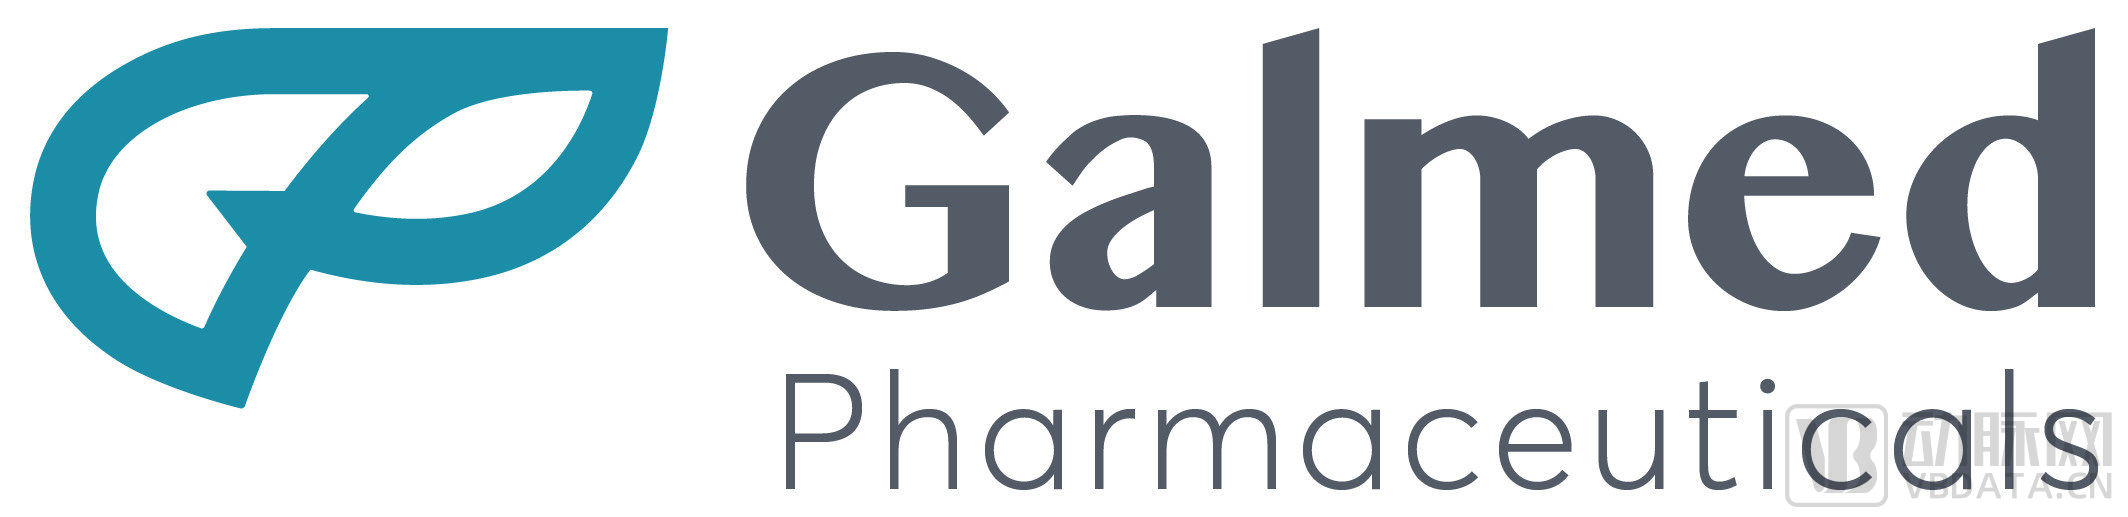 Galmed_Pharmaceuticals_Ltd_Logo.jpg